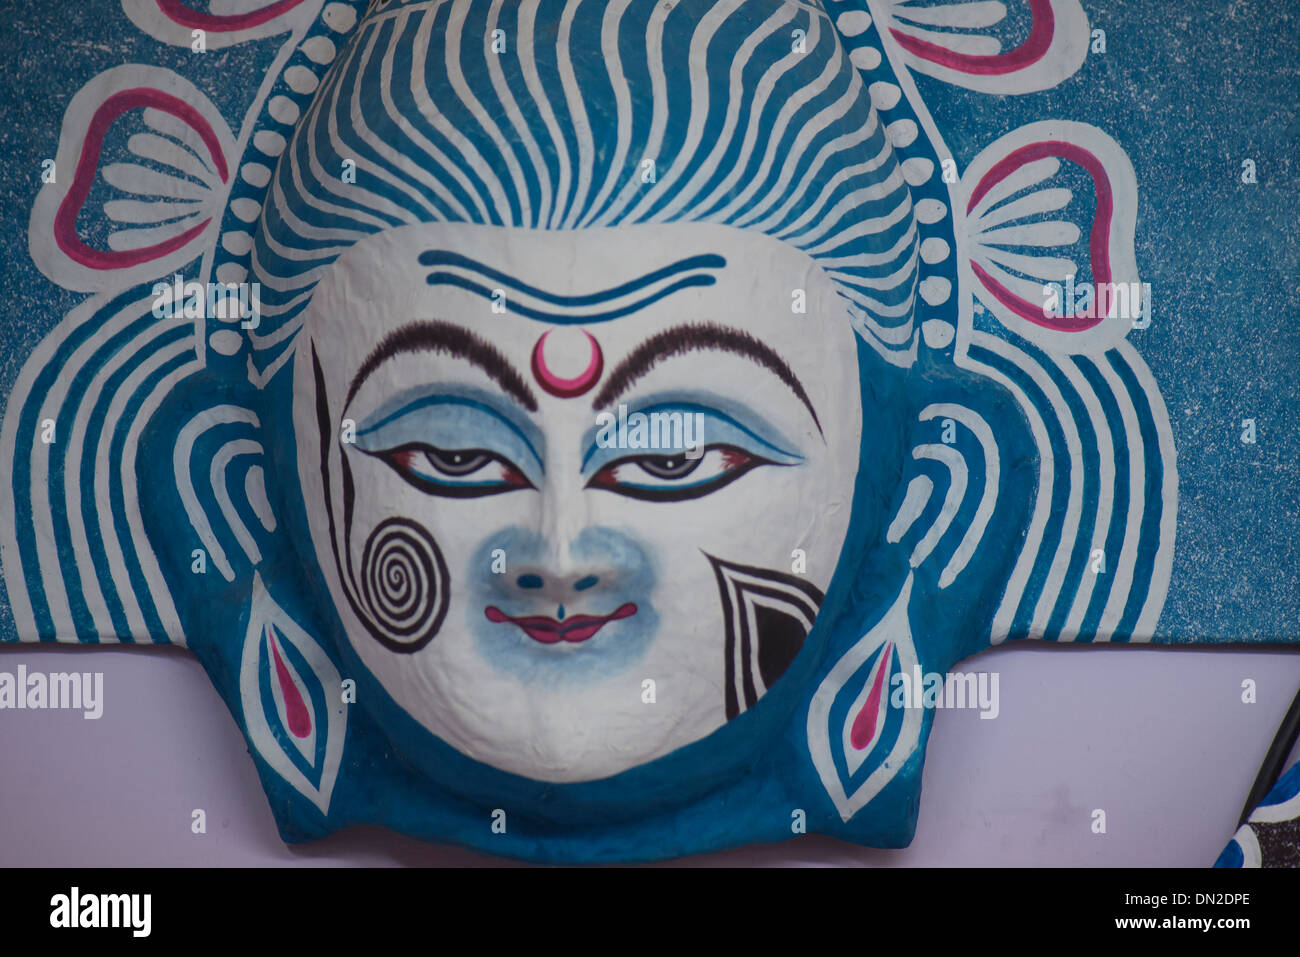 La lavorazione artigianale della maschera di carta del signore Shiva nei colori del bianco e del nero,blu, indicando benigna grazia di Dio. Foto Stock